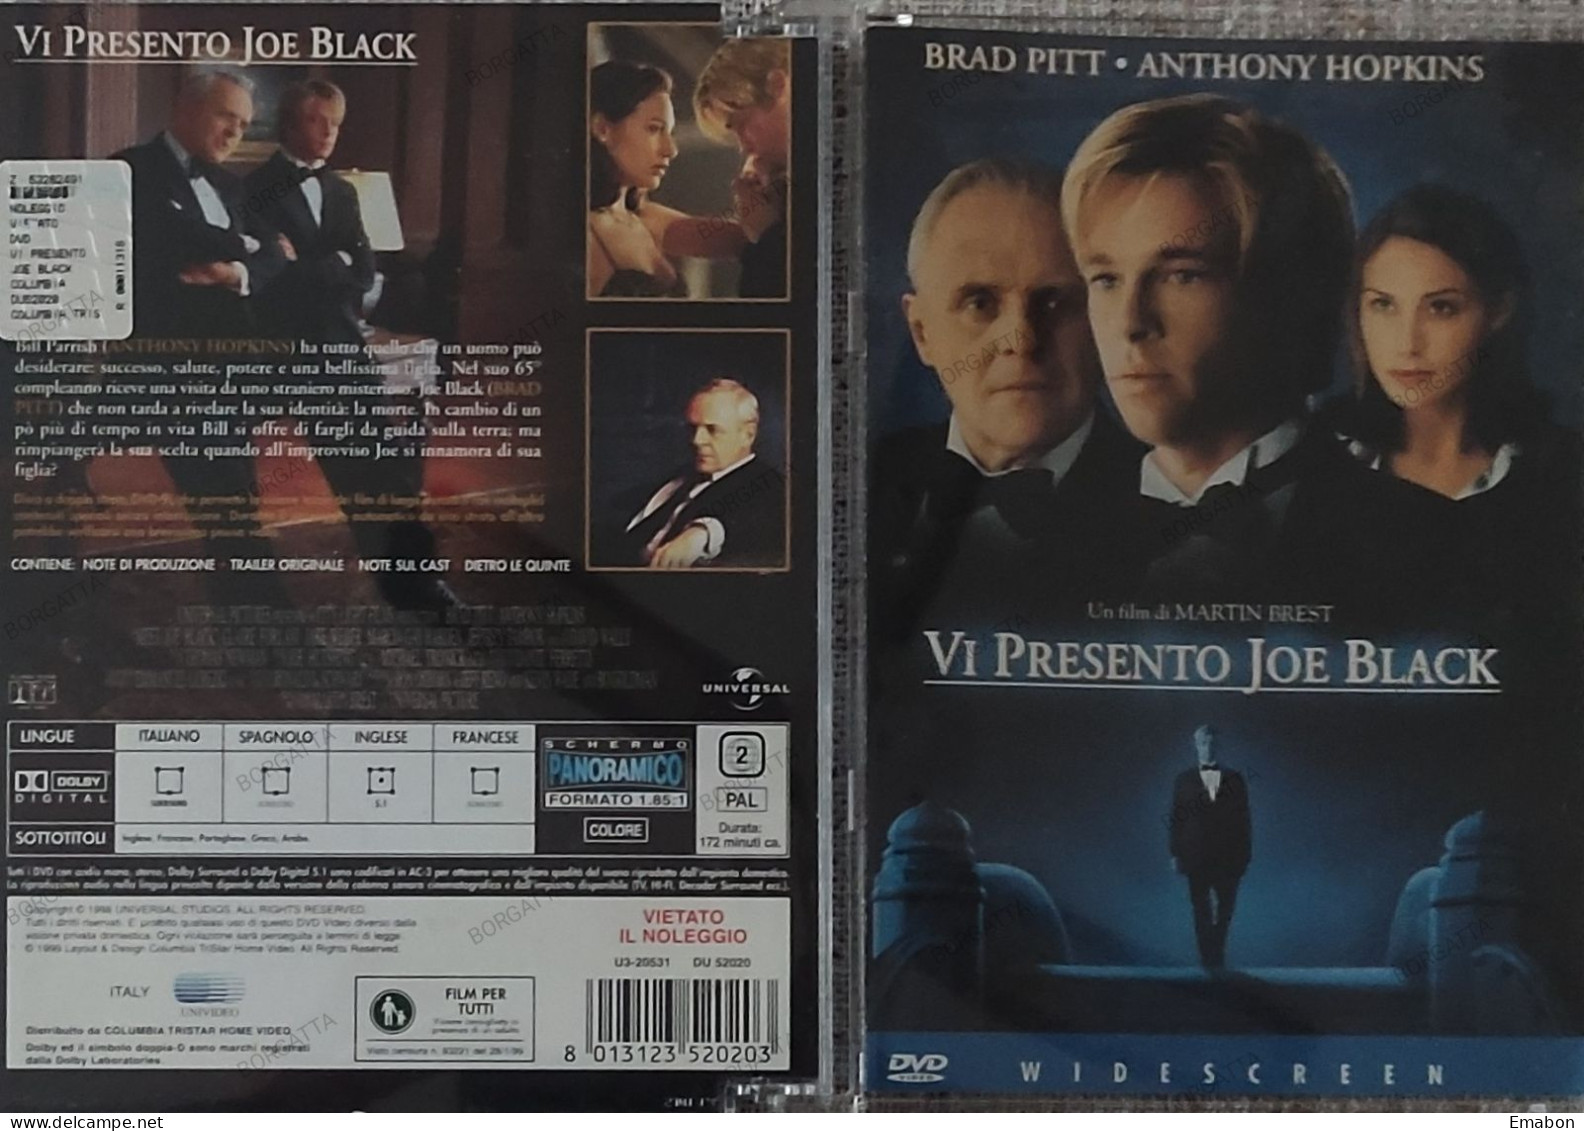 BORGATTA - FANTASTICO - Dvd " VI PRESENTO JOE BLACK "- PITT, HOPKINS - COLUMBIA 1999 -  USATO In Buono Stato - Fantasía